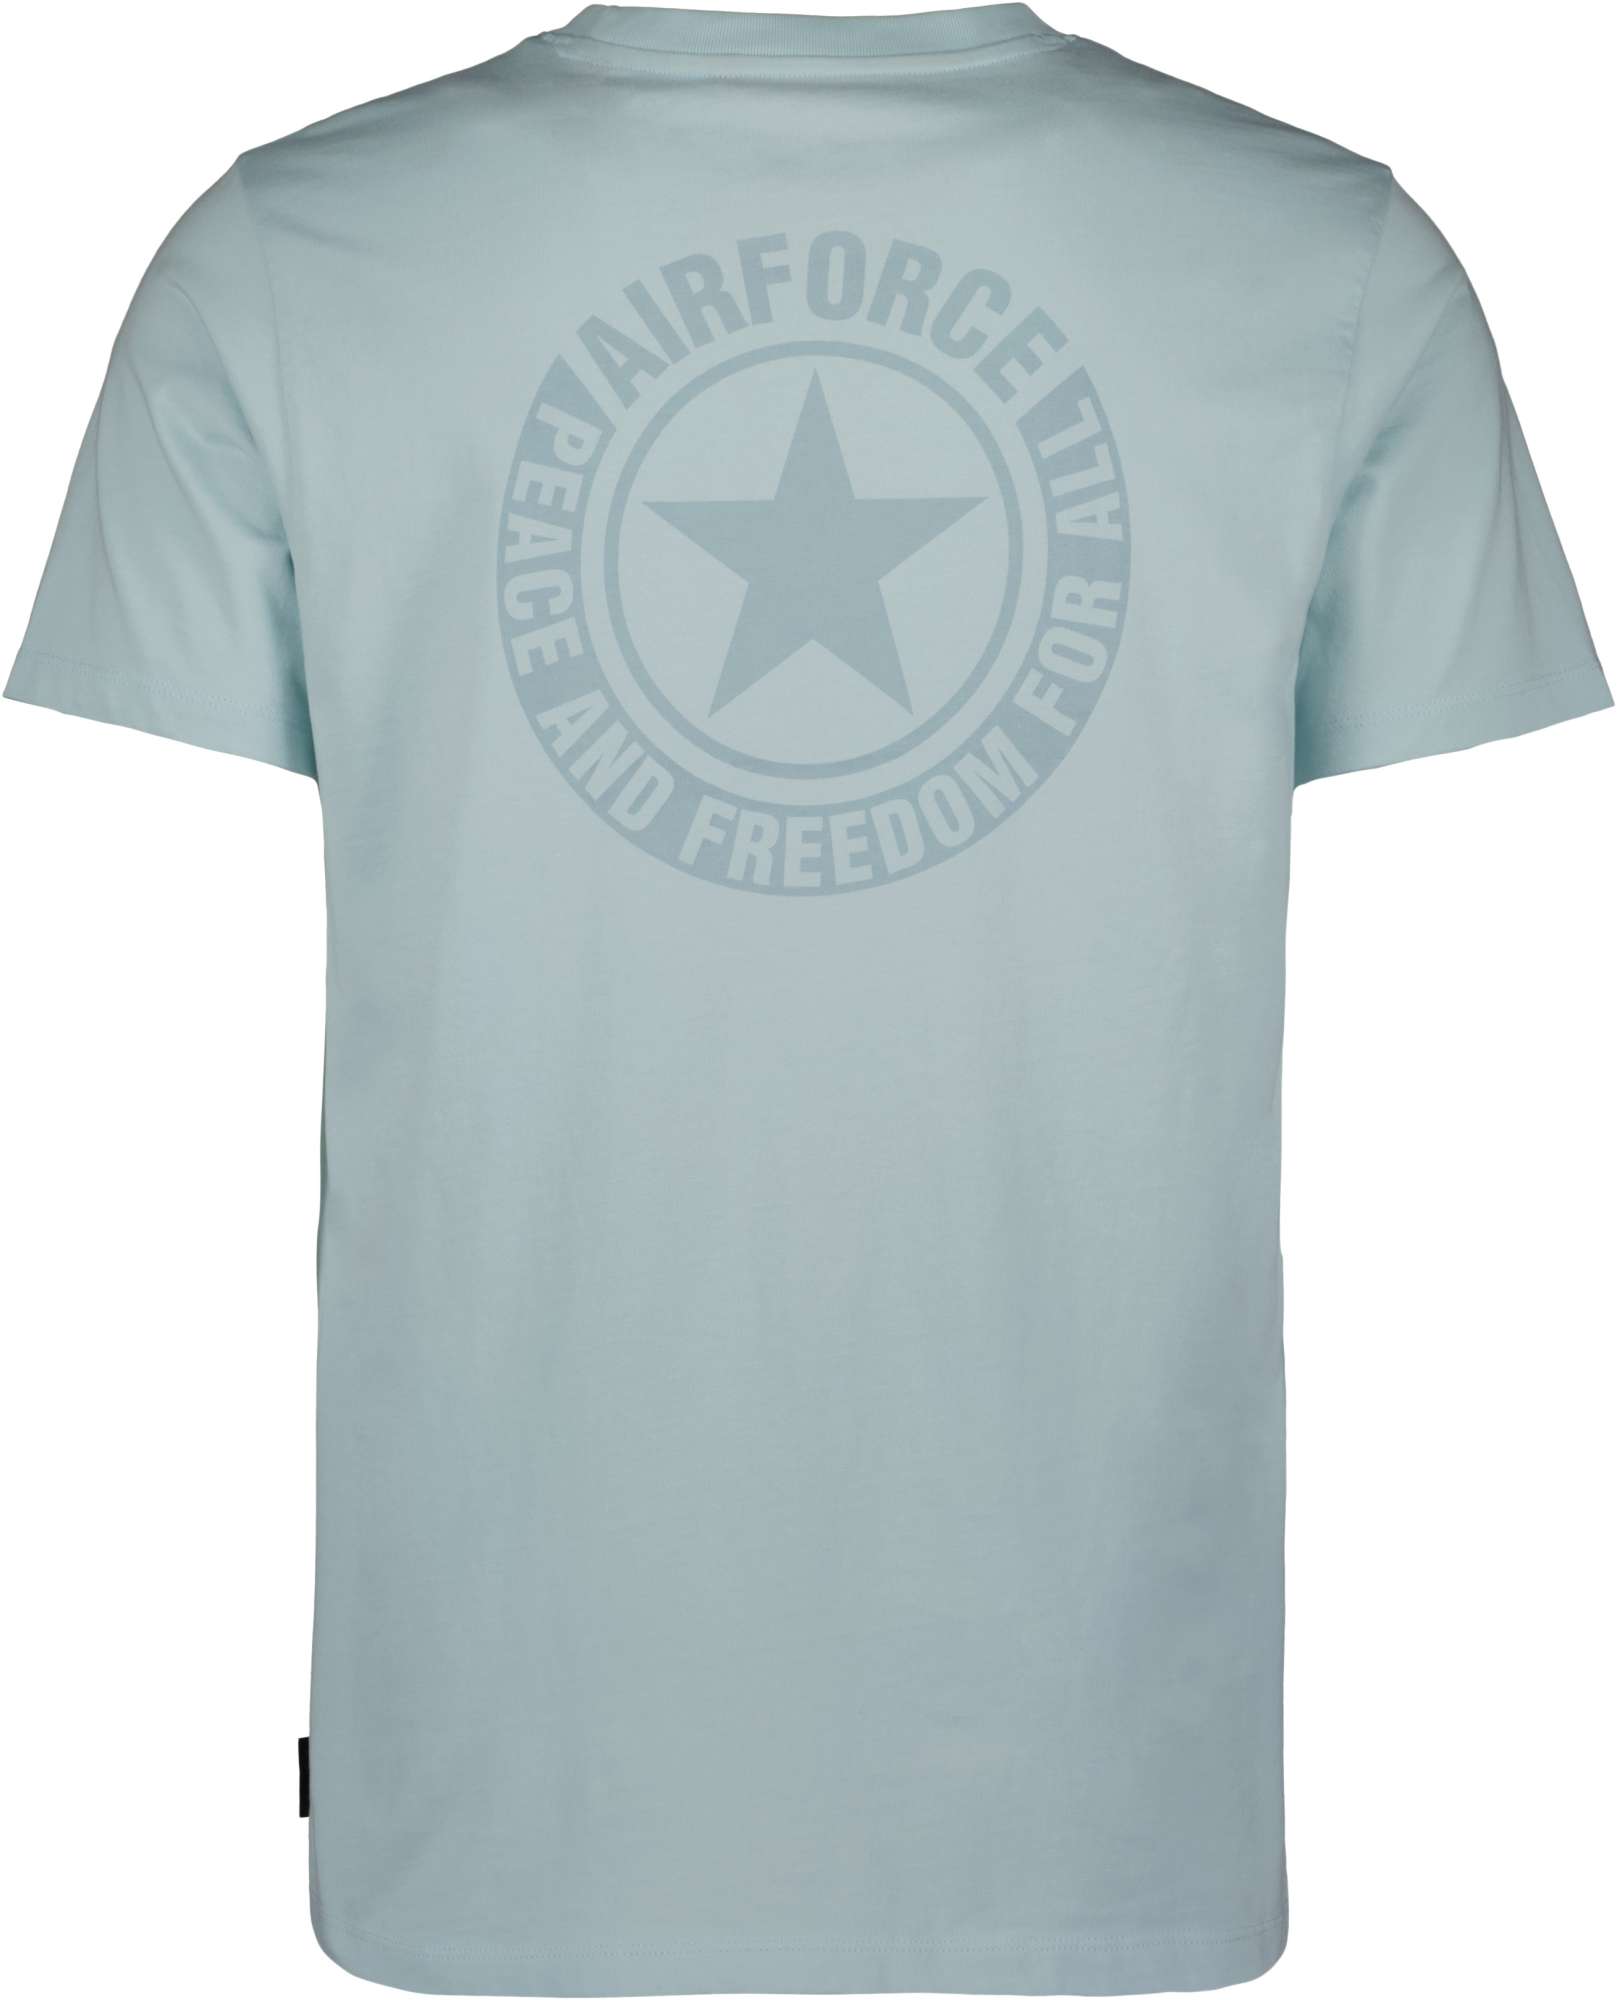 Afbeelding van Airforce Wording/logo pastel blue